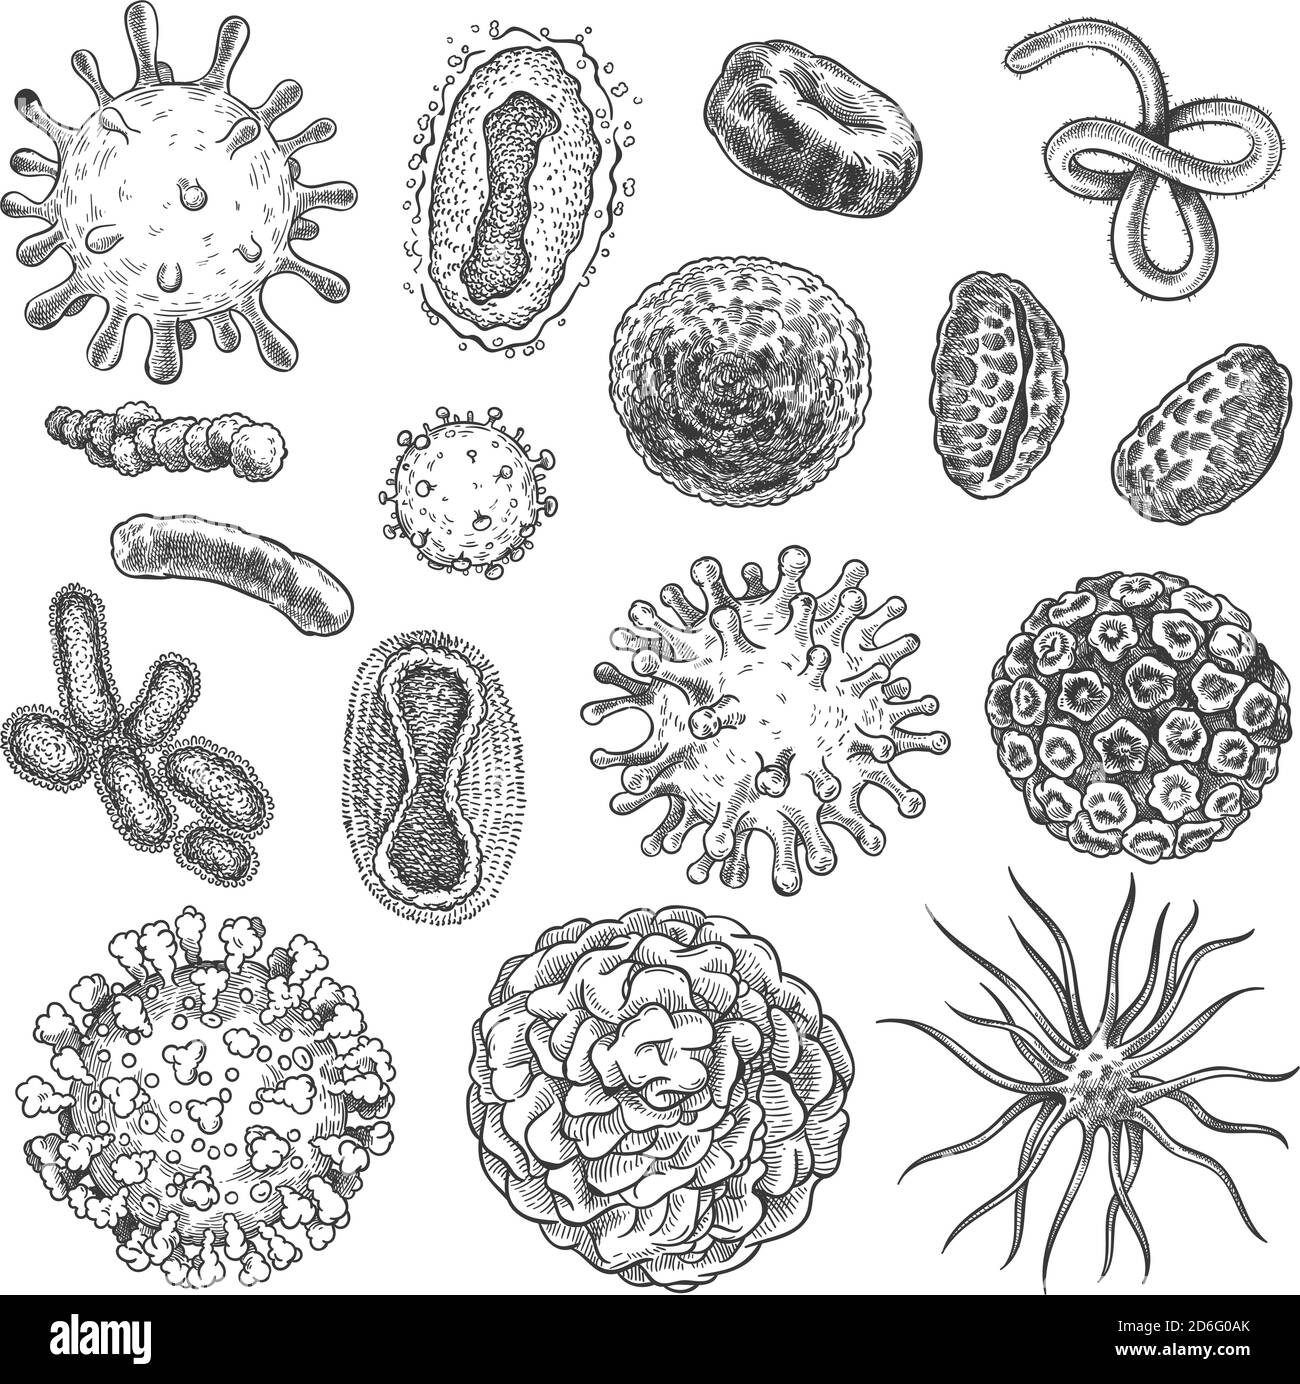 Virus di schizzo. Batteri, coronavirus germe biologia microelementi organici. Virus Covid-19, cellule tumorali insieme di vettori di incisione disegnati a mano Illustrazione Vettoriale